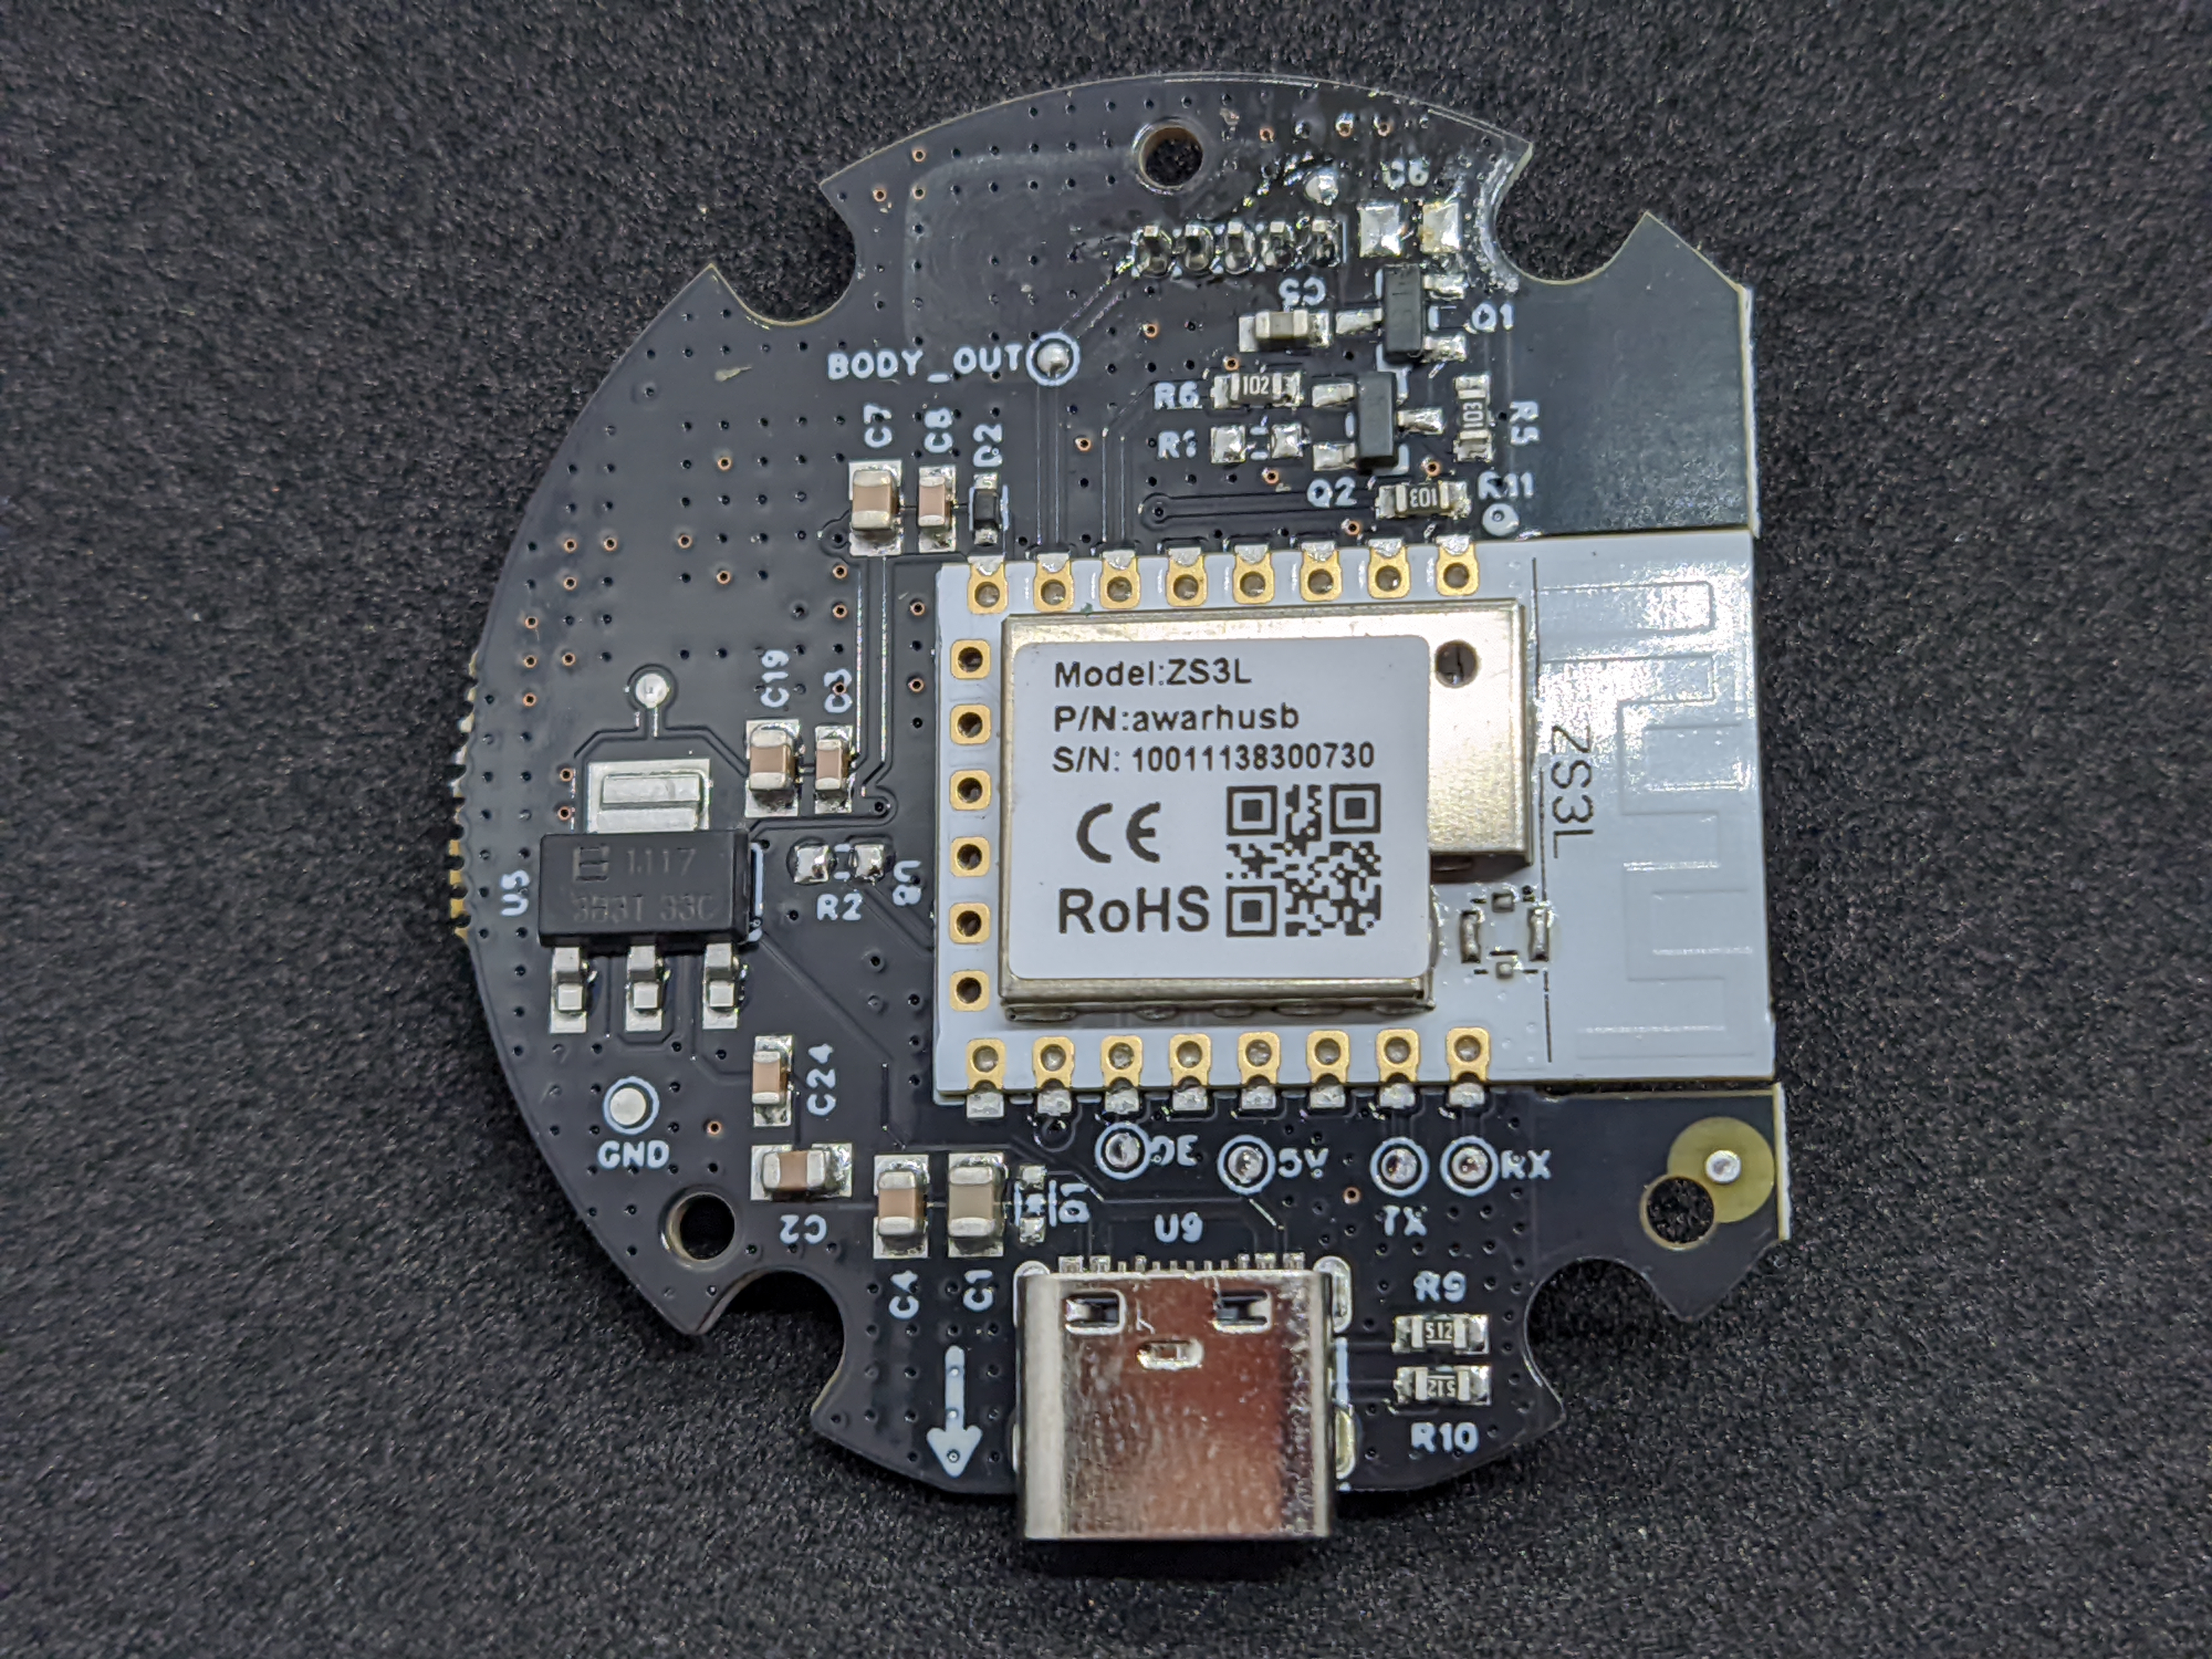 Sensor module side